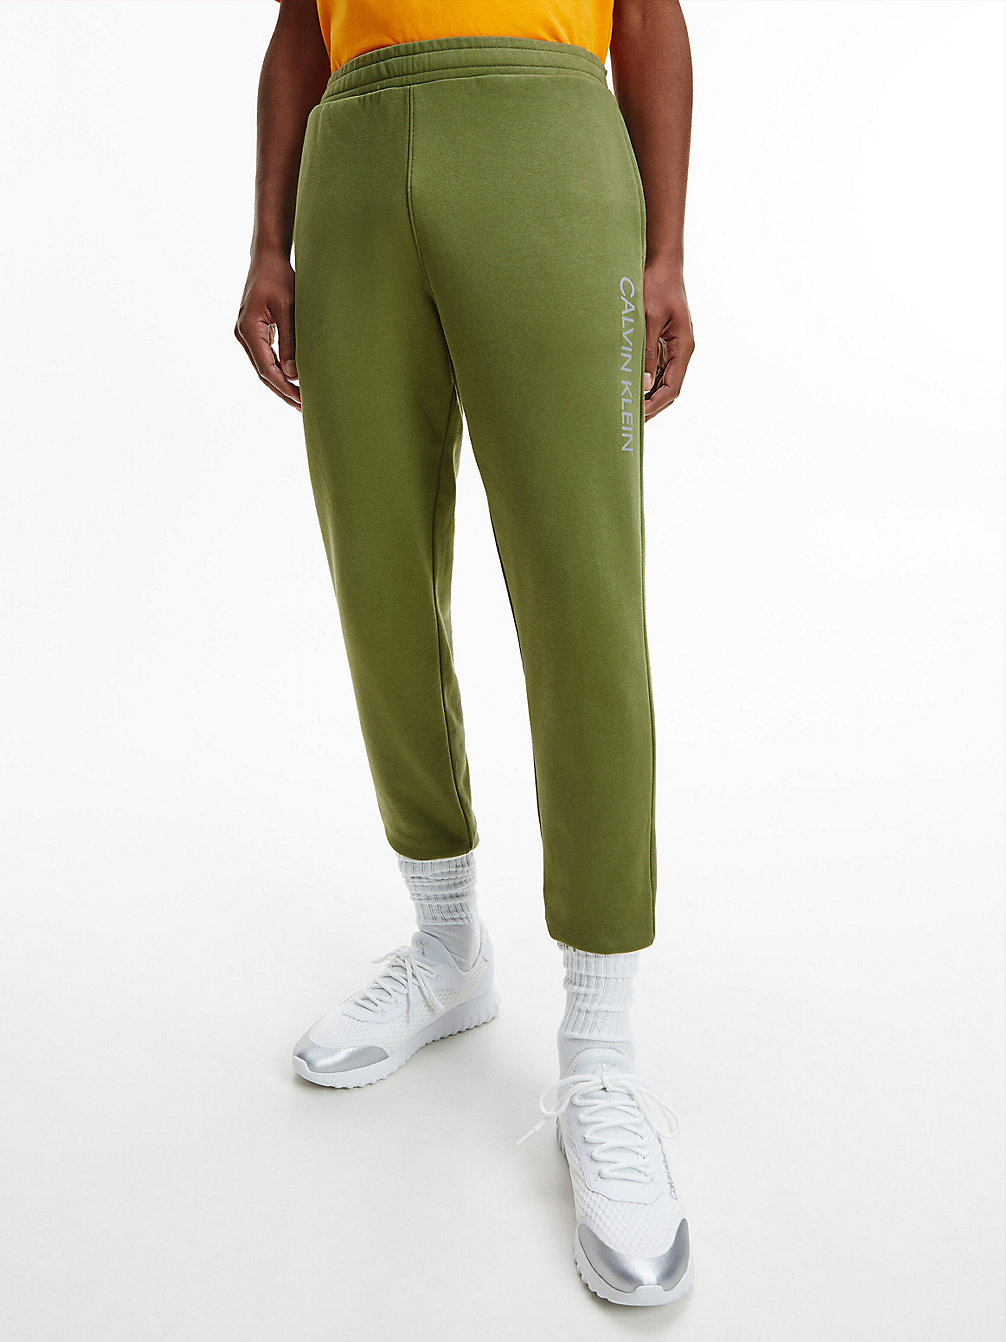 CAPULET OLIVE/ FLAME ORANGE Pantalon De Jogging En Tissu Éponge De Coton undefined hommes Calvin Klein